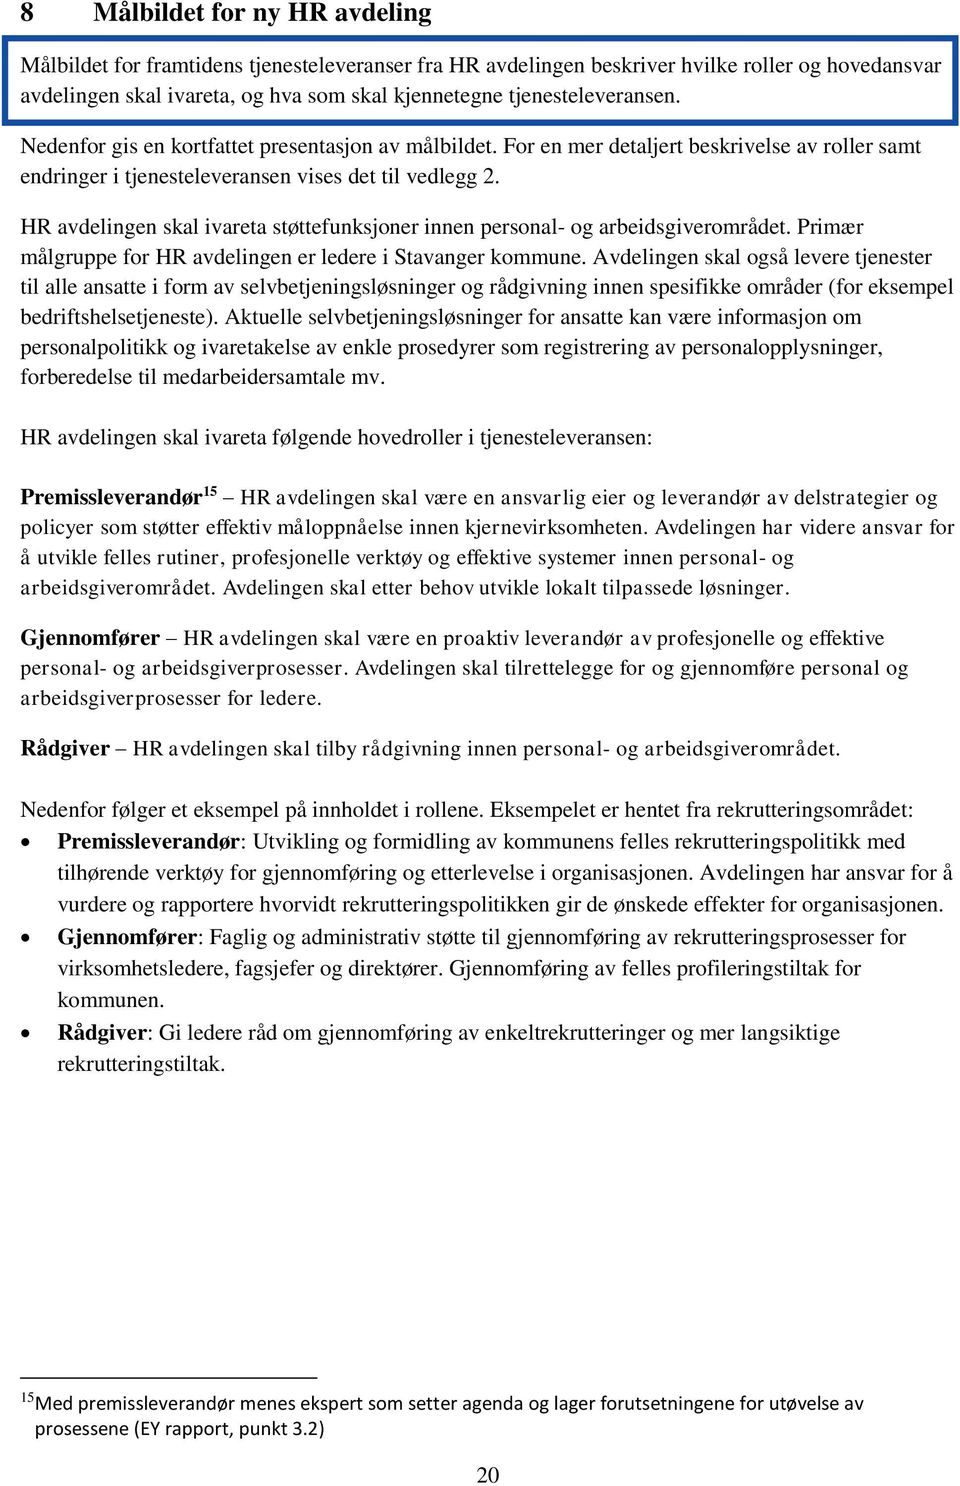 HR avdelingen skal ivareta støttefunksjoner innen personal- og arbeidsgiverområdet. Primær målgruppe for HR avdelingen er ledere i Stavanger kommune.